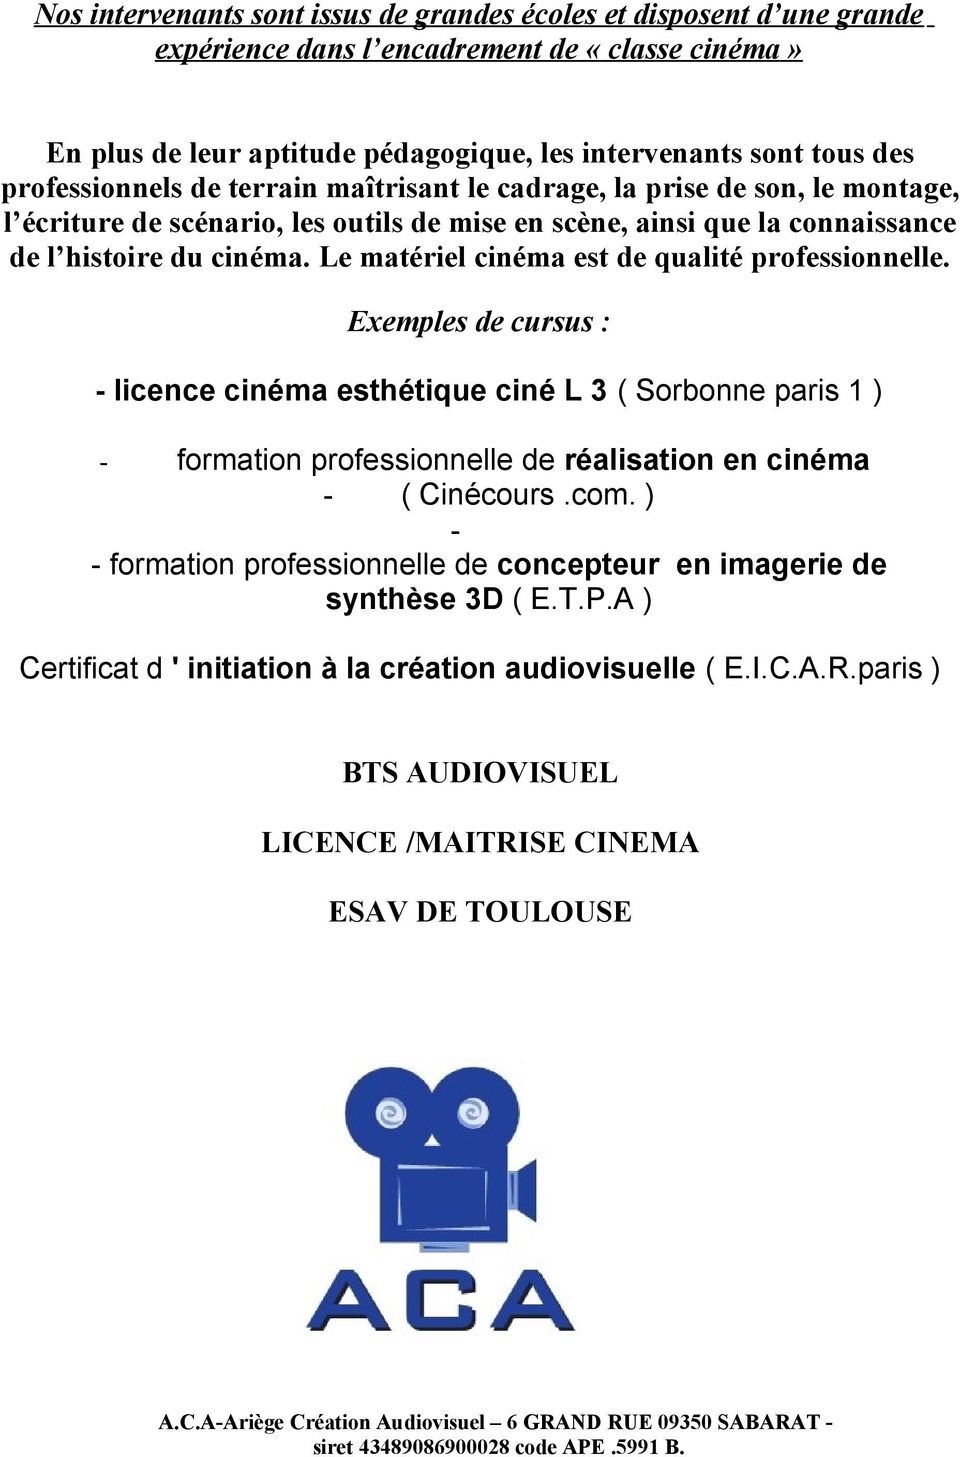 Le matériel cinéma est de qualité professionnelle. Exemples de cursus : - licence cinéma esthétique ciné L 3 ( Sorbonne paris 1 ) - formation professionnelle de réalisation en cinéma - ( Cinécours.